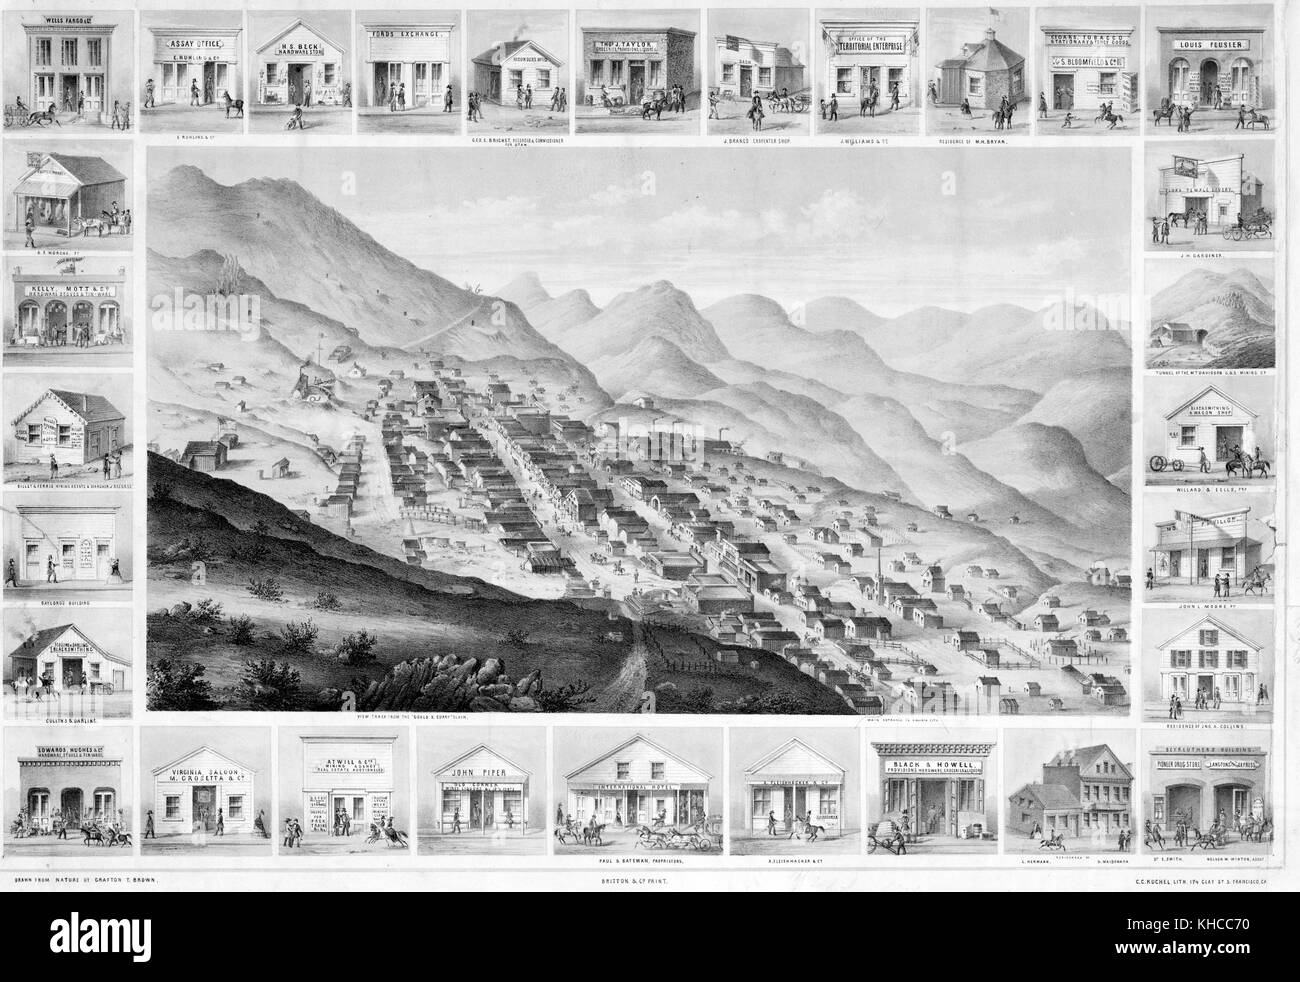 Une gravure d'une illustration de Virginia City vue de dessus, plusieurs dizaines de bâtiments peuvent être vus parmi les collines du paysage, l'illustration de la ville elle-même est entourée d'illustrations individuelles de bâtiments notables dans la ville elle-même, territoire du Nevada, 1861. De la Bibliothèque publique de New York. Banque D'Images